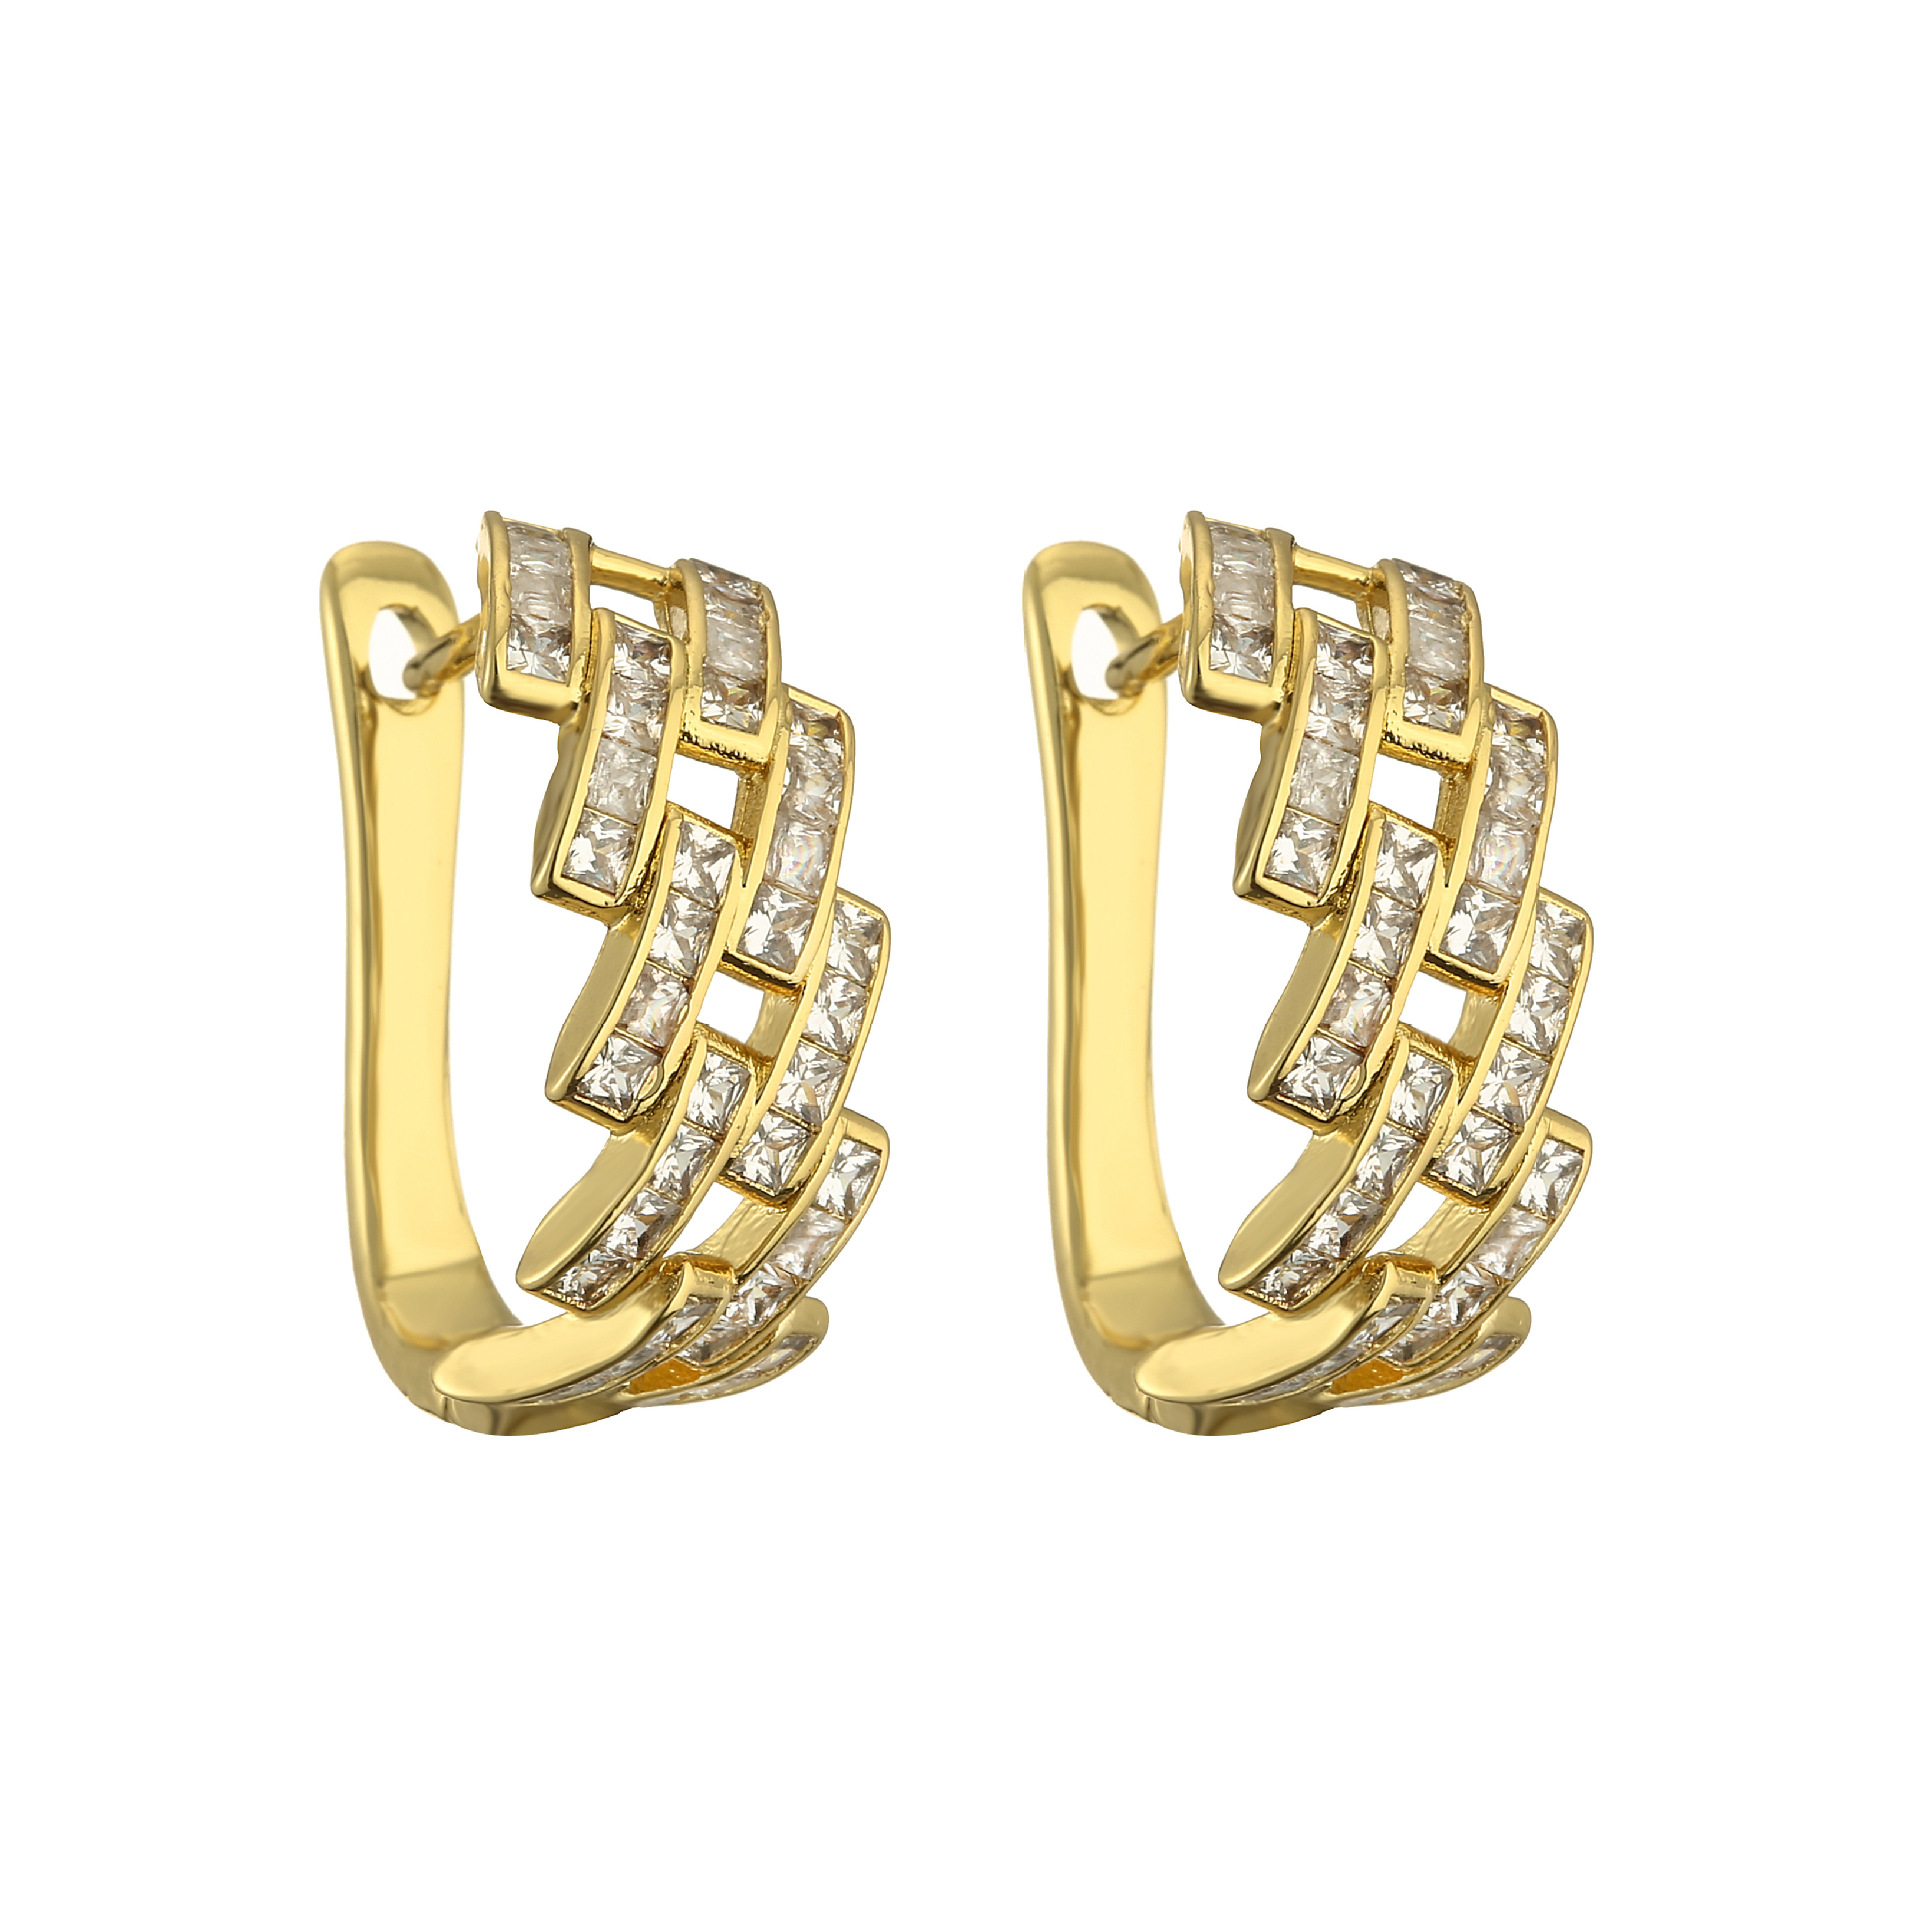 5:1 pair of golden earrings